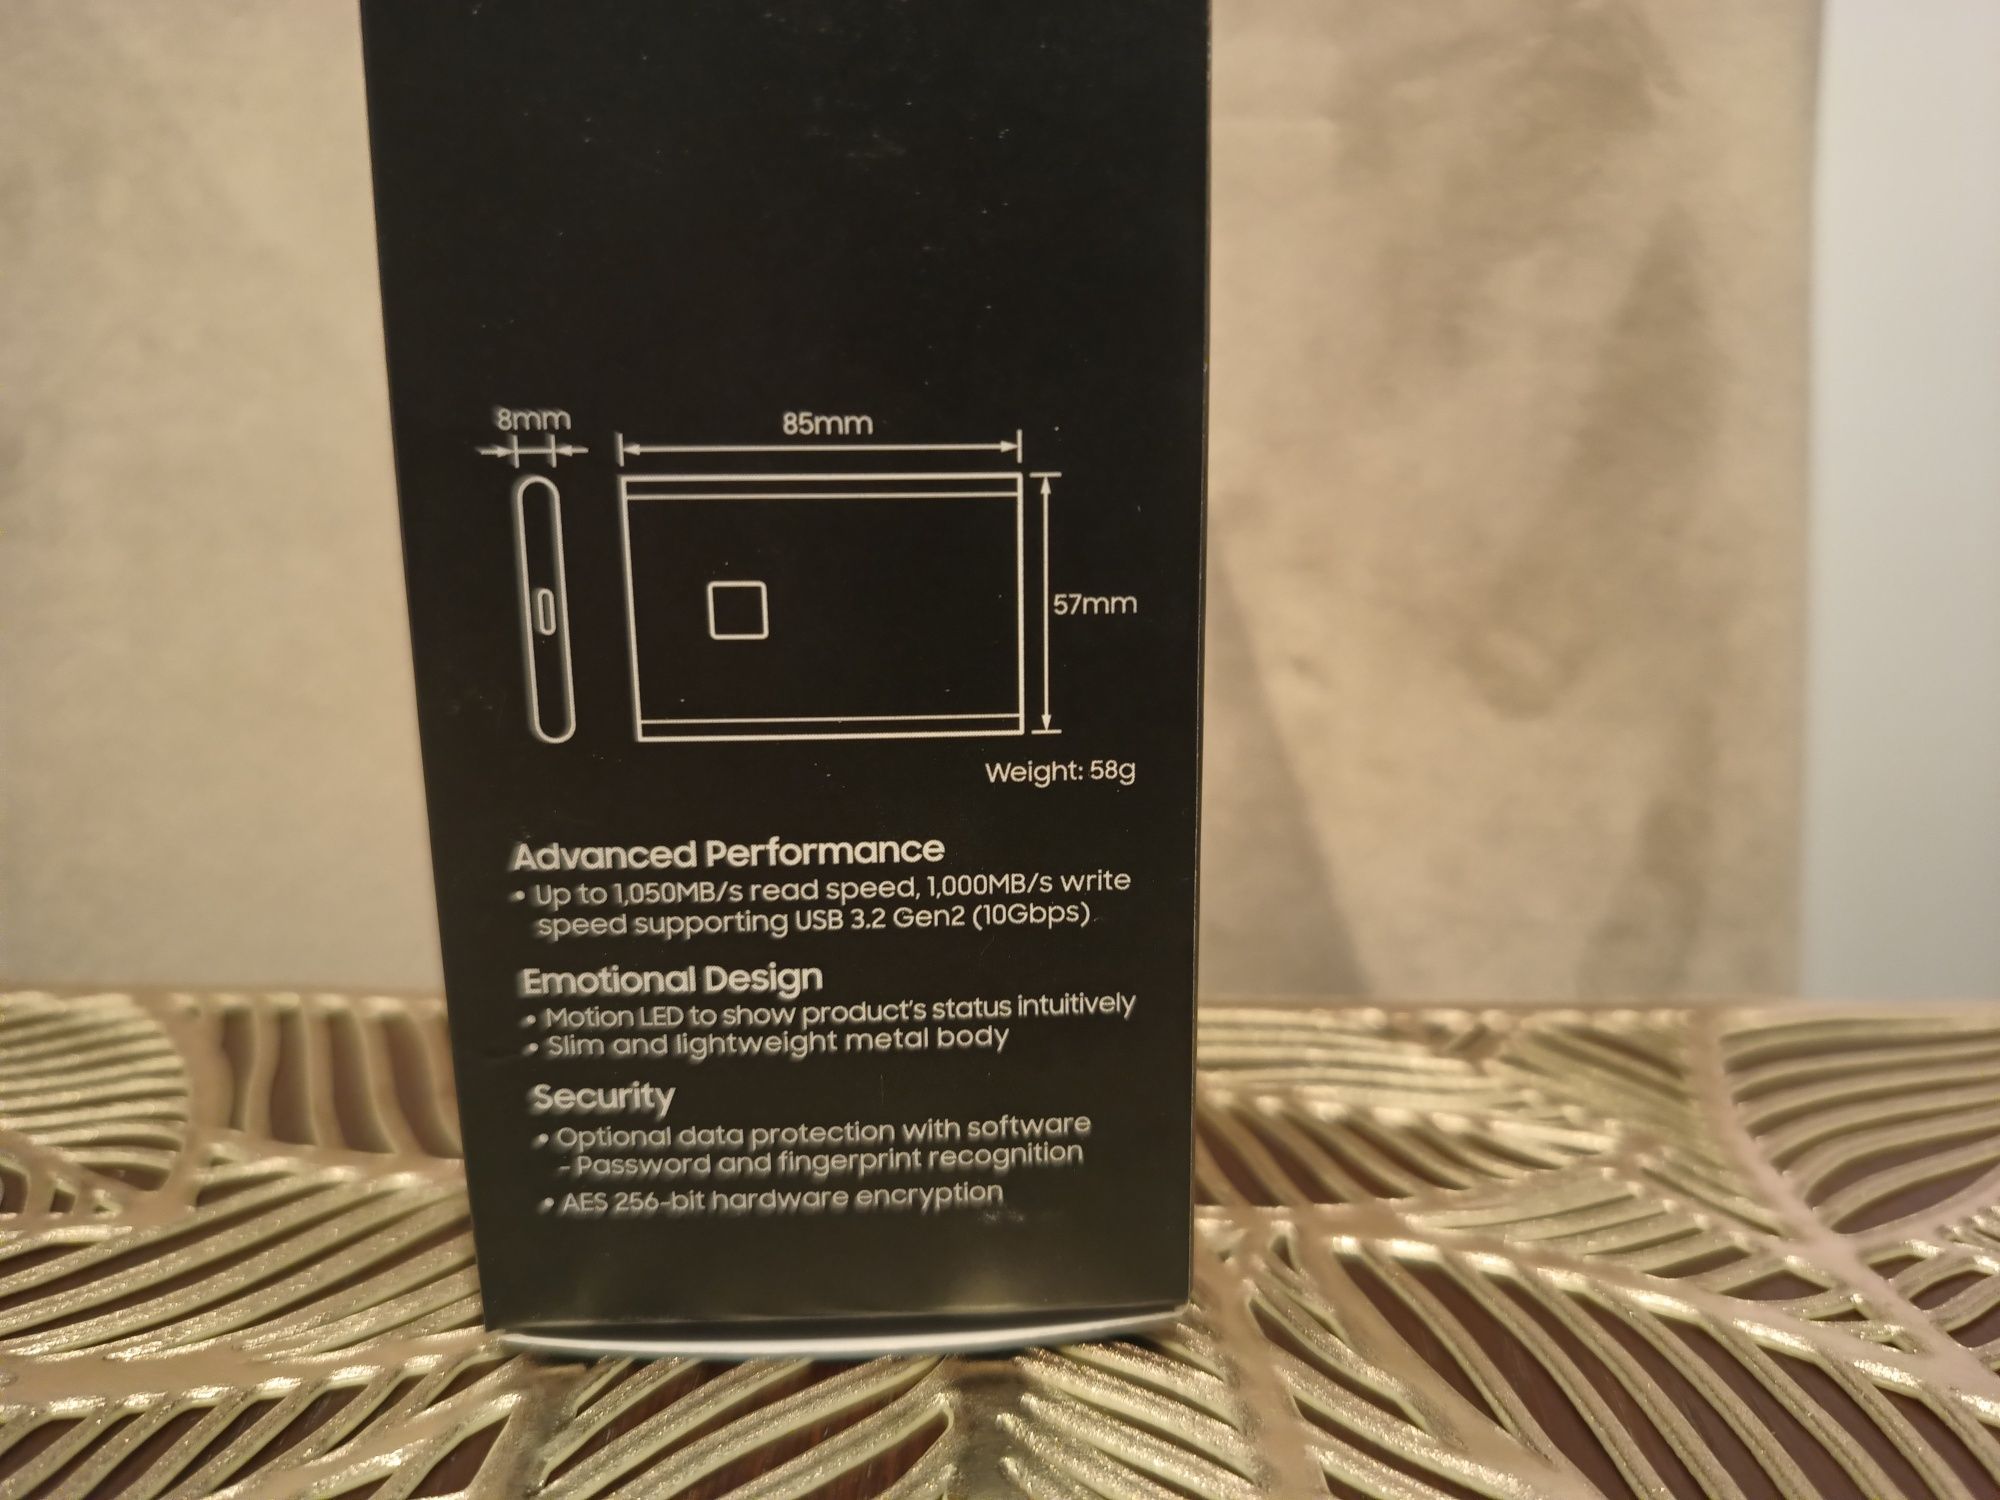 Dysk przenośny SSD Samsung T7 Touch 2 TB , nowy